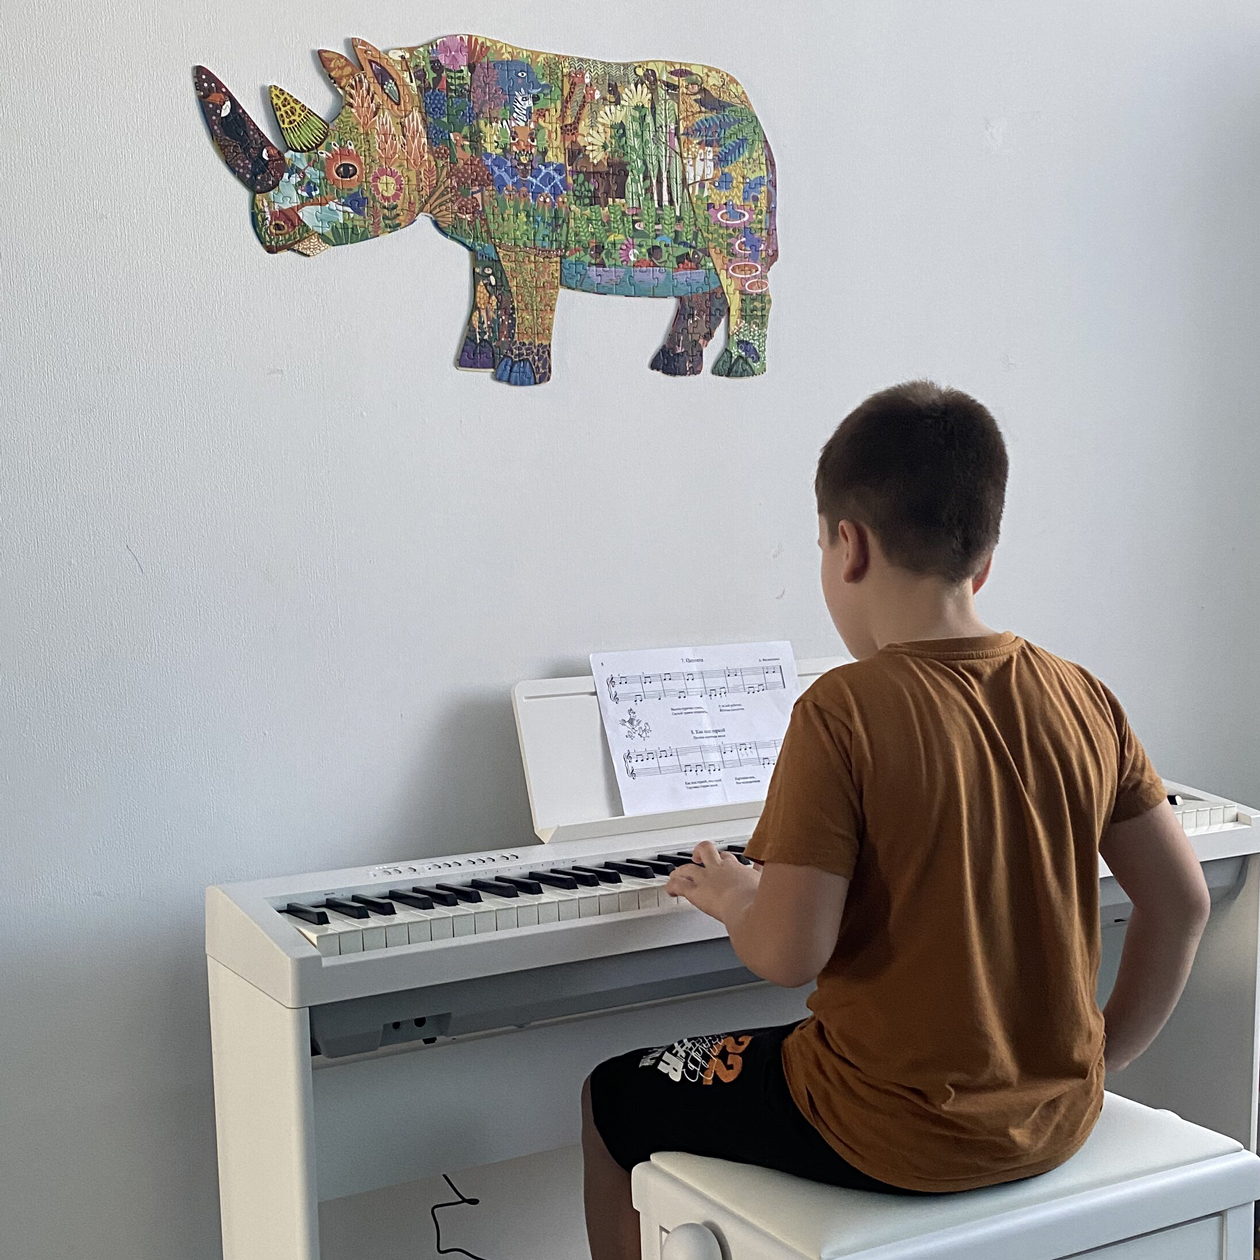 Фортепиано у нас дома электронное. Сейчас Даня уверенно играет произведения уровня третьего класса музыкальной школы, а занимается только полтора года